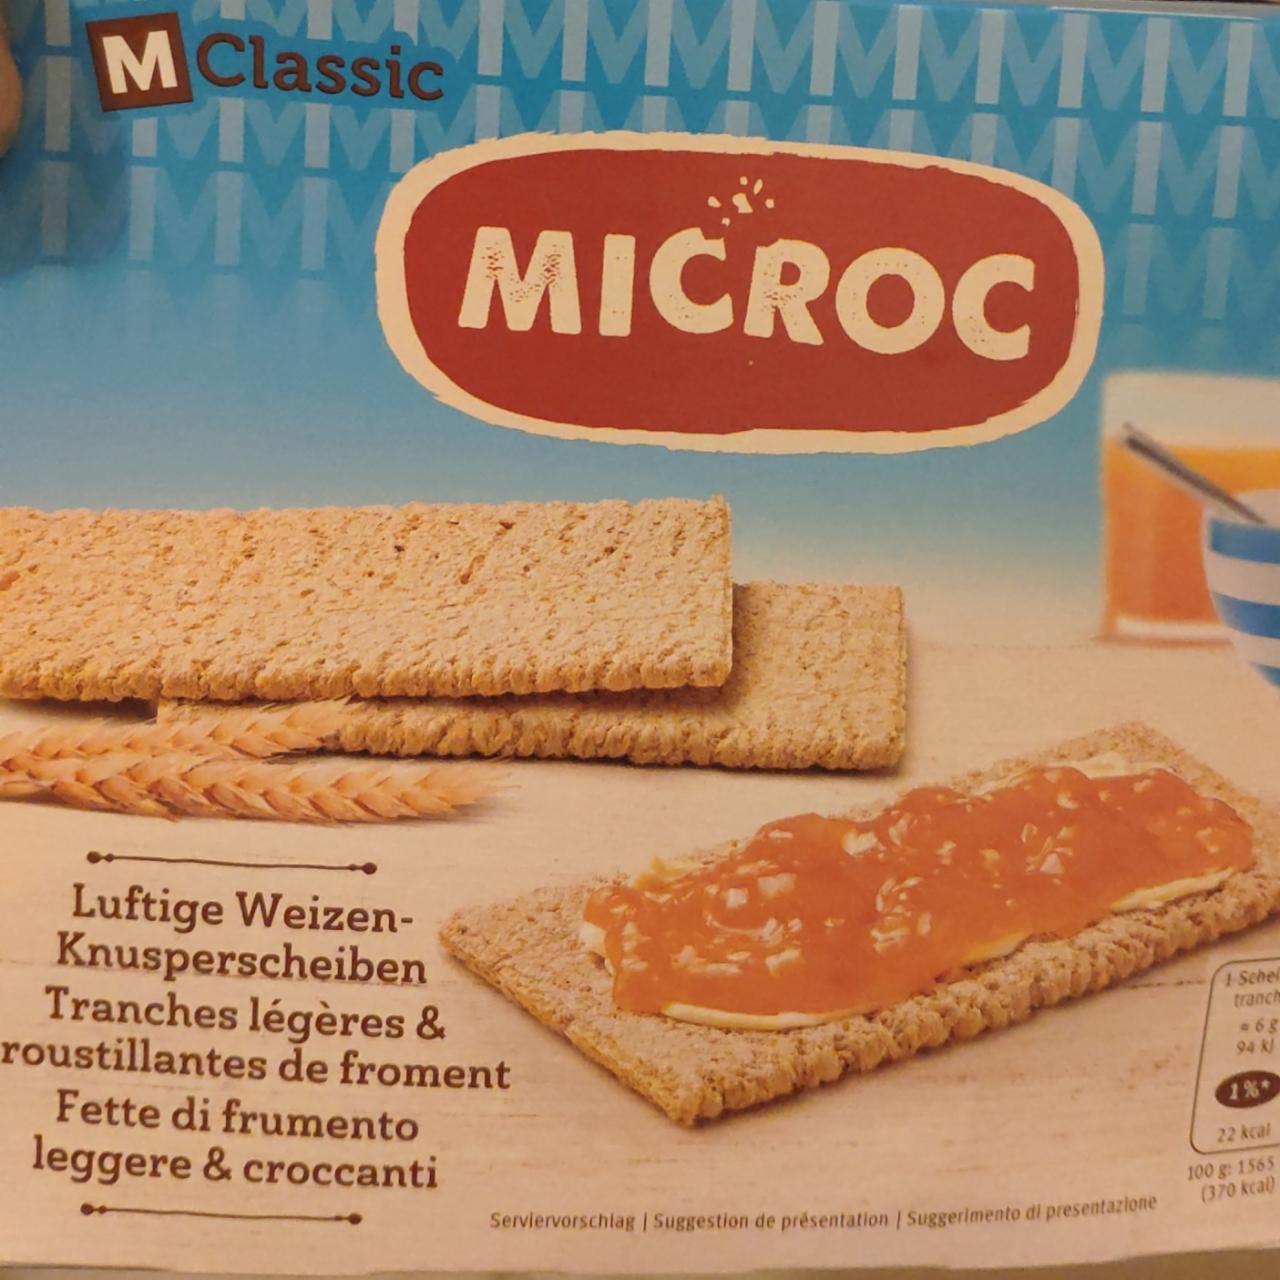 Фото - Хлебцы ломтики пшеничные воздушные M-Classic Migros Microc